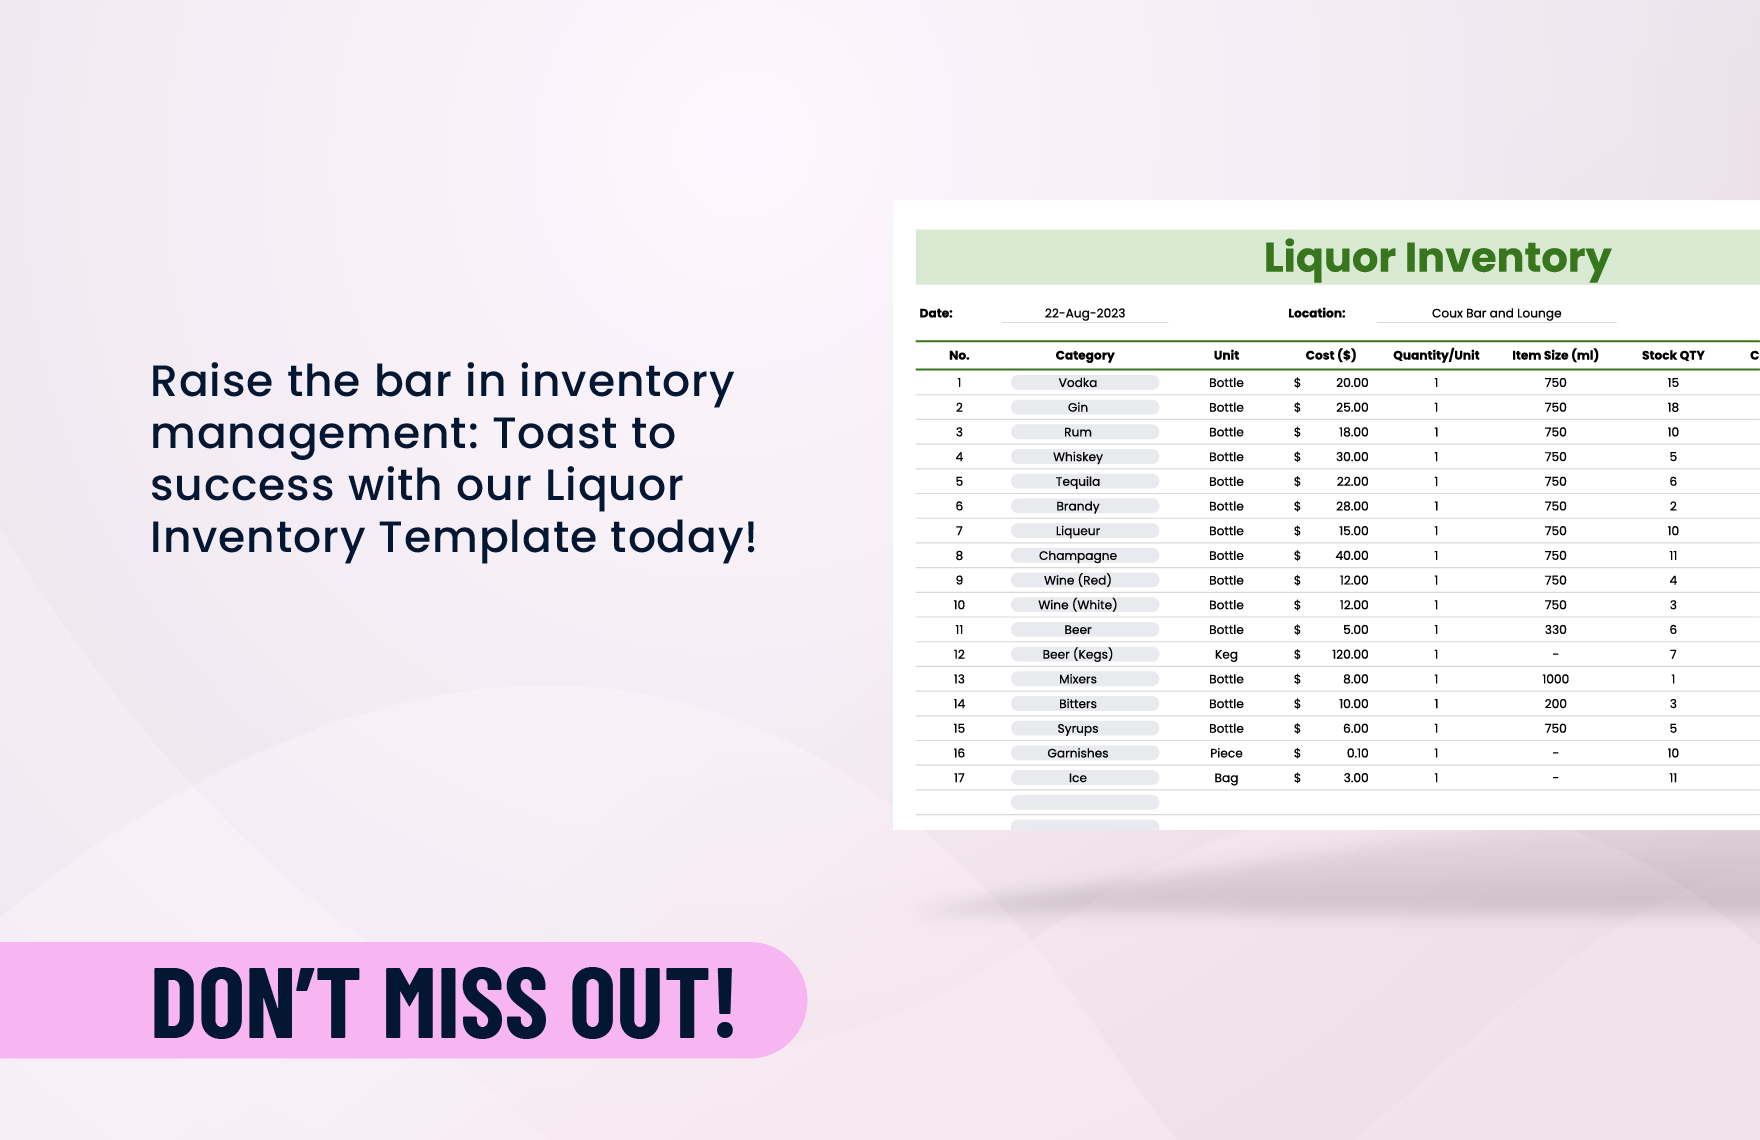 Liquor Inventory Template